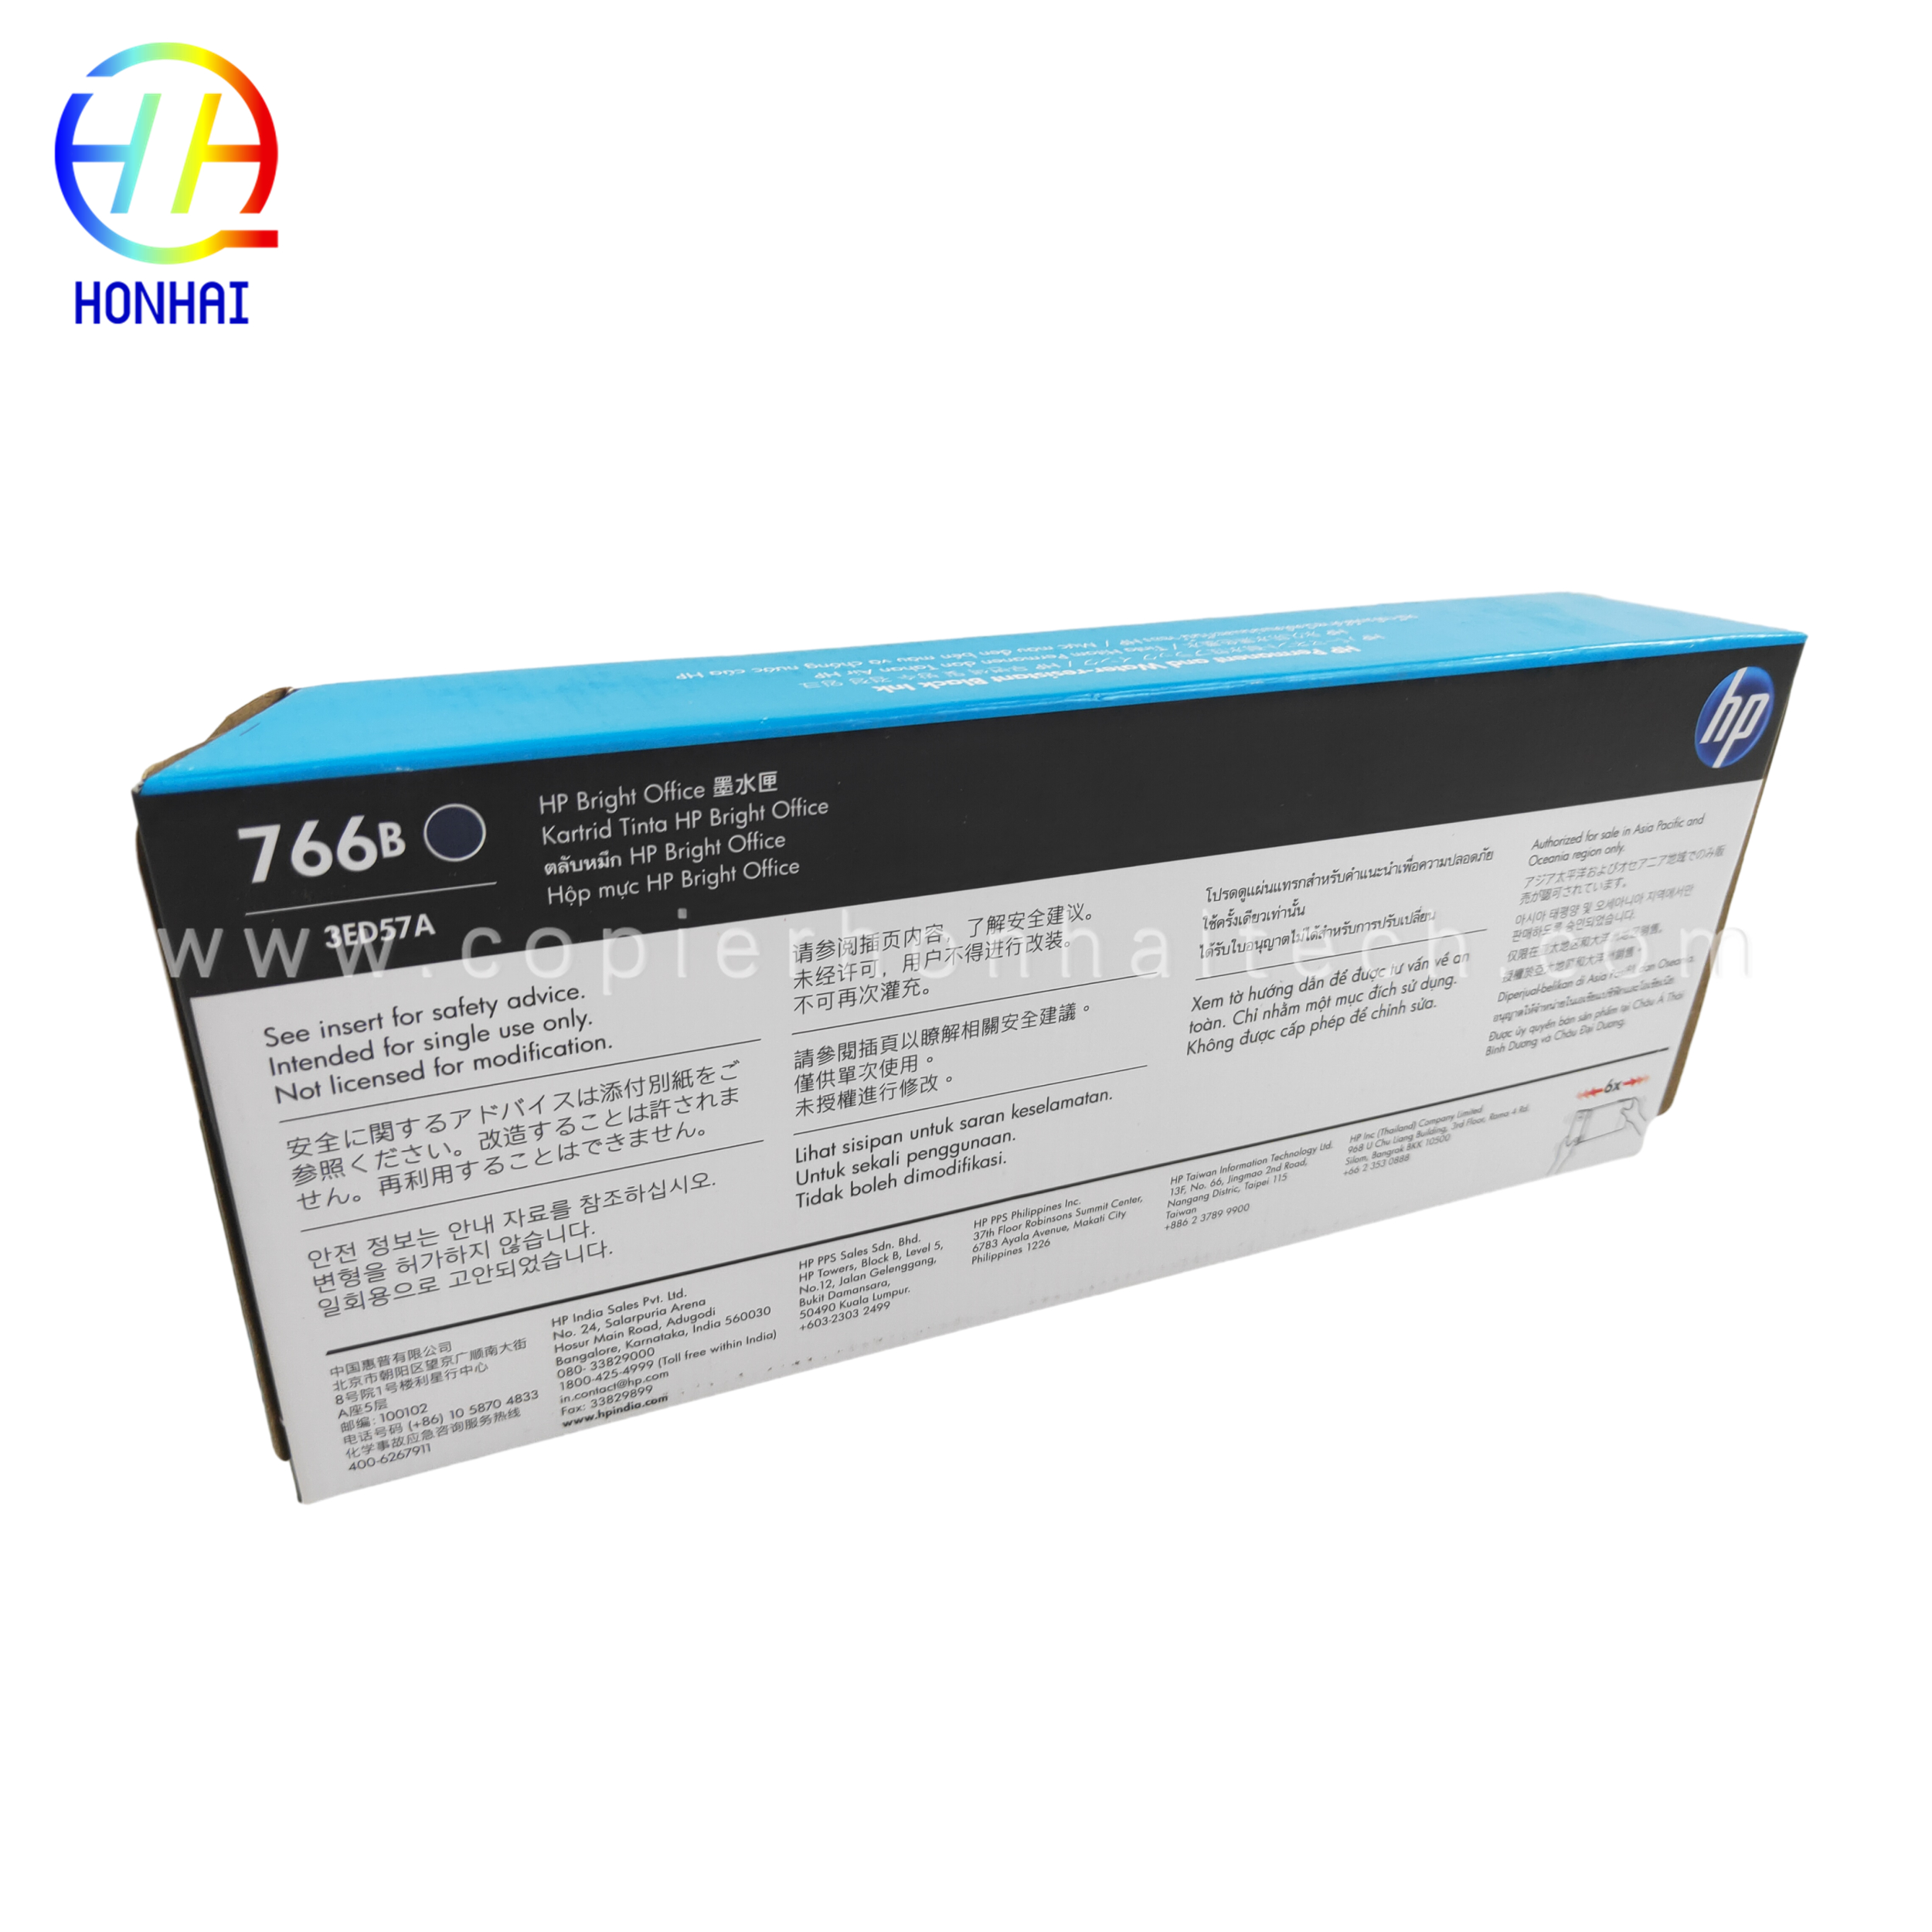 https://www.copierhonhaitech.com/origen-ink-cartridge-for-hp-designjet-xl-3600-766-300-ml-matte-black-p2v92a-product/